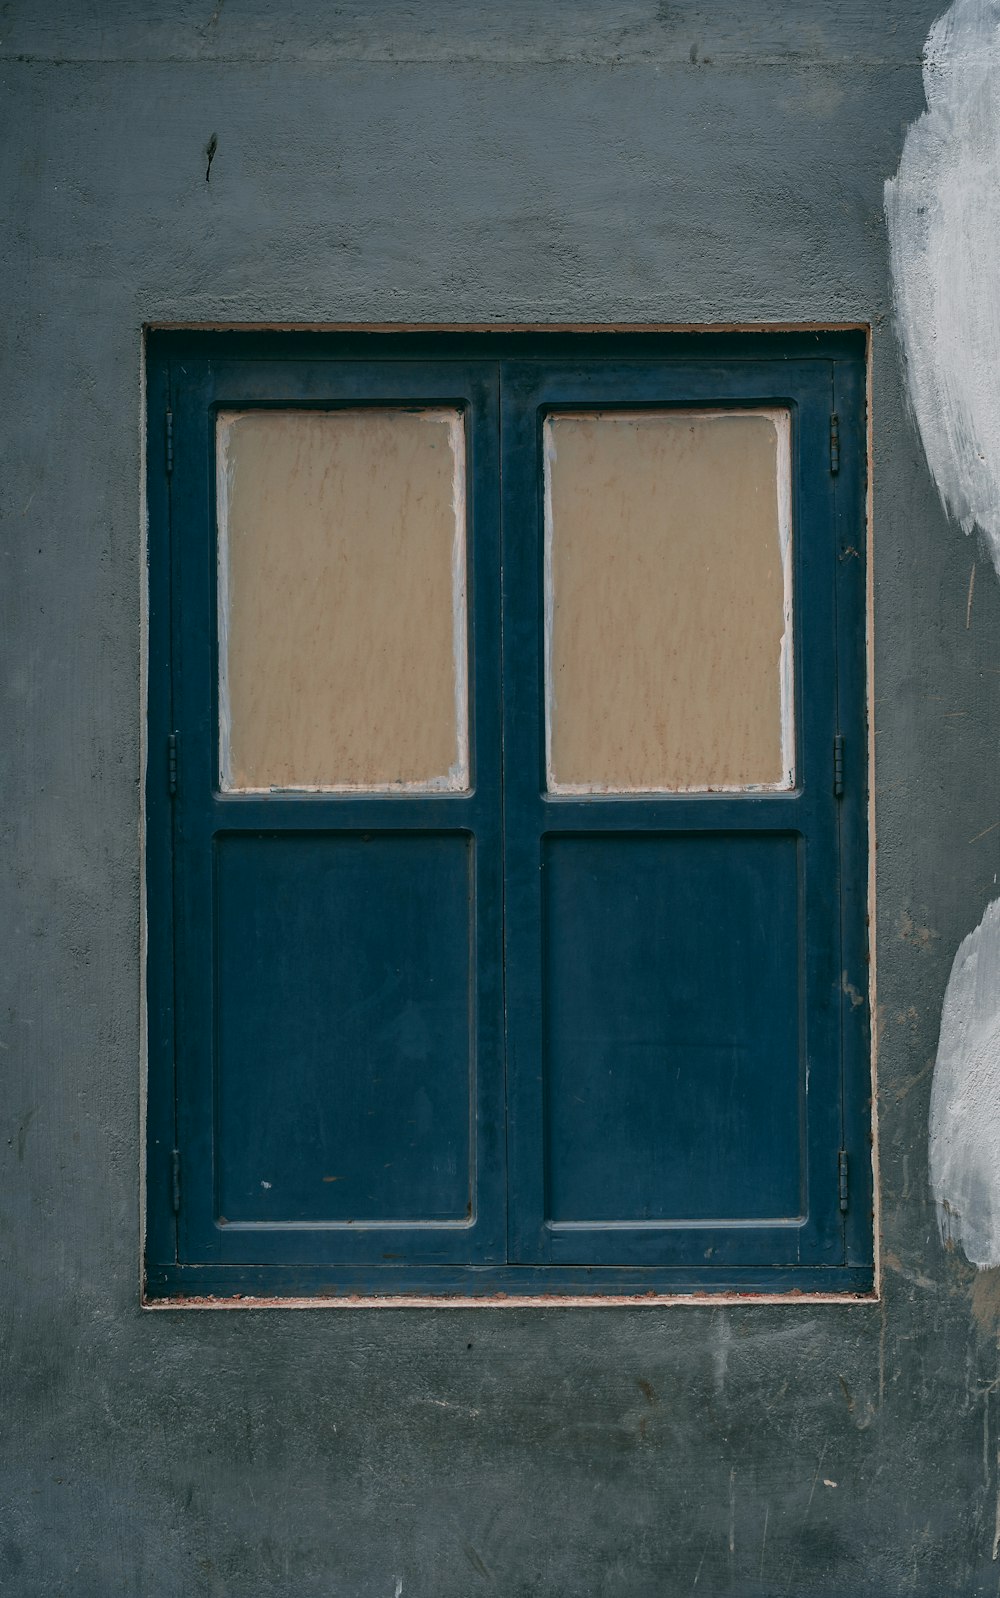 blue wooden doors